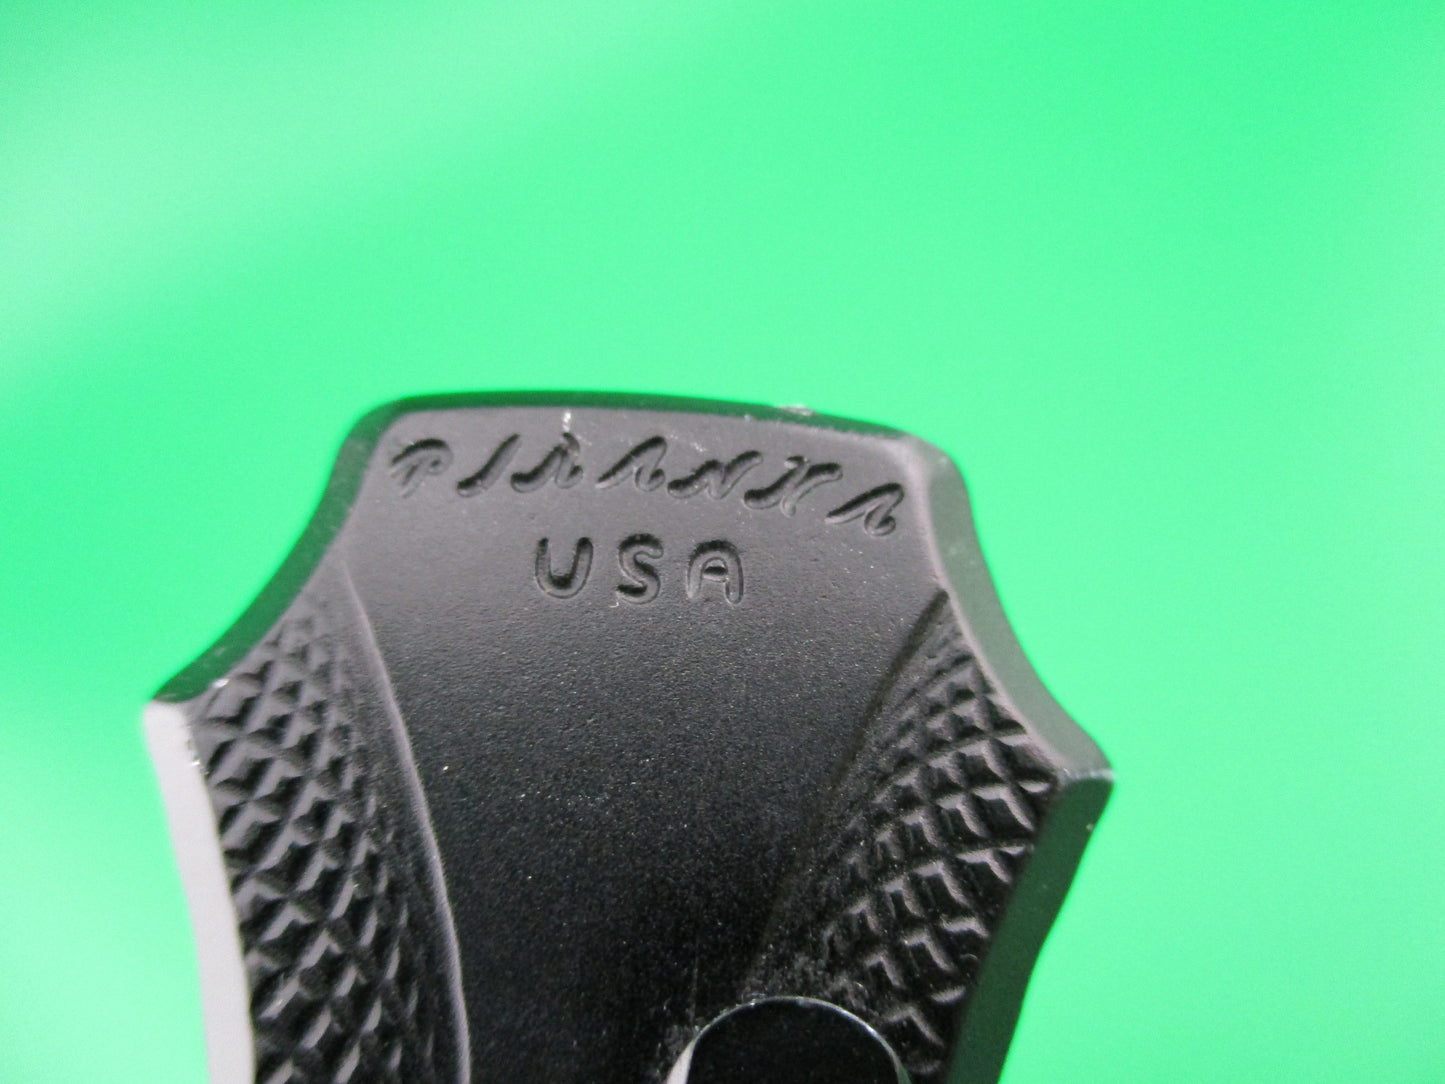 Piranha Rated-X  DA USA OTF Dagger mirror finish